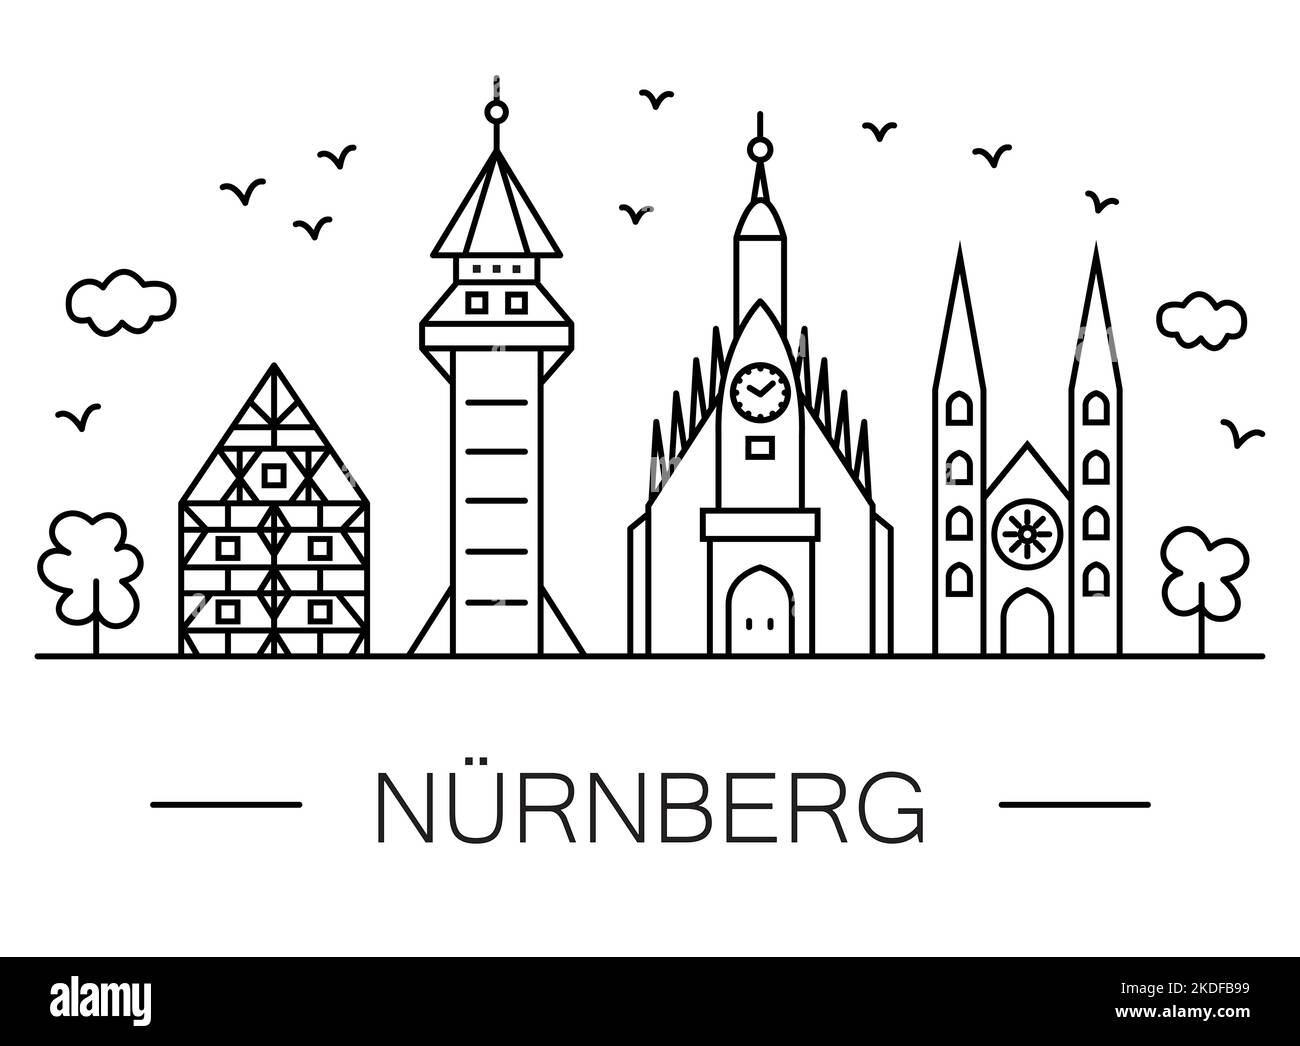 Nuremberg CityScape Line Art: Célèbres bildings - symboles de ville. Dessin noir et blanc avec lignes droites. Illustration de Vecteur